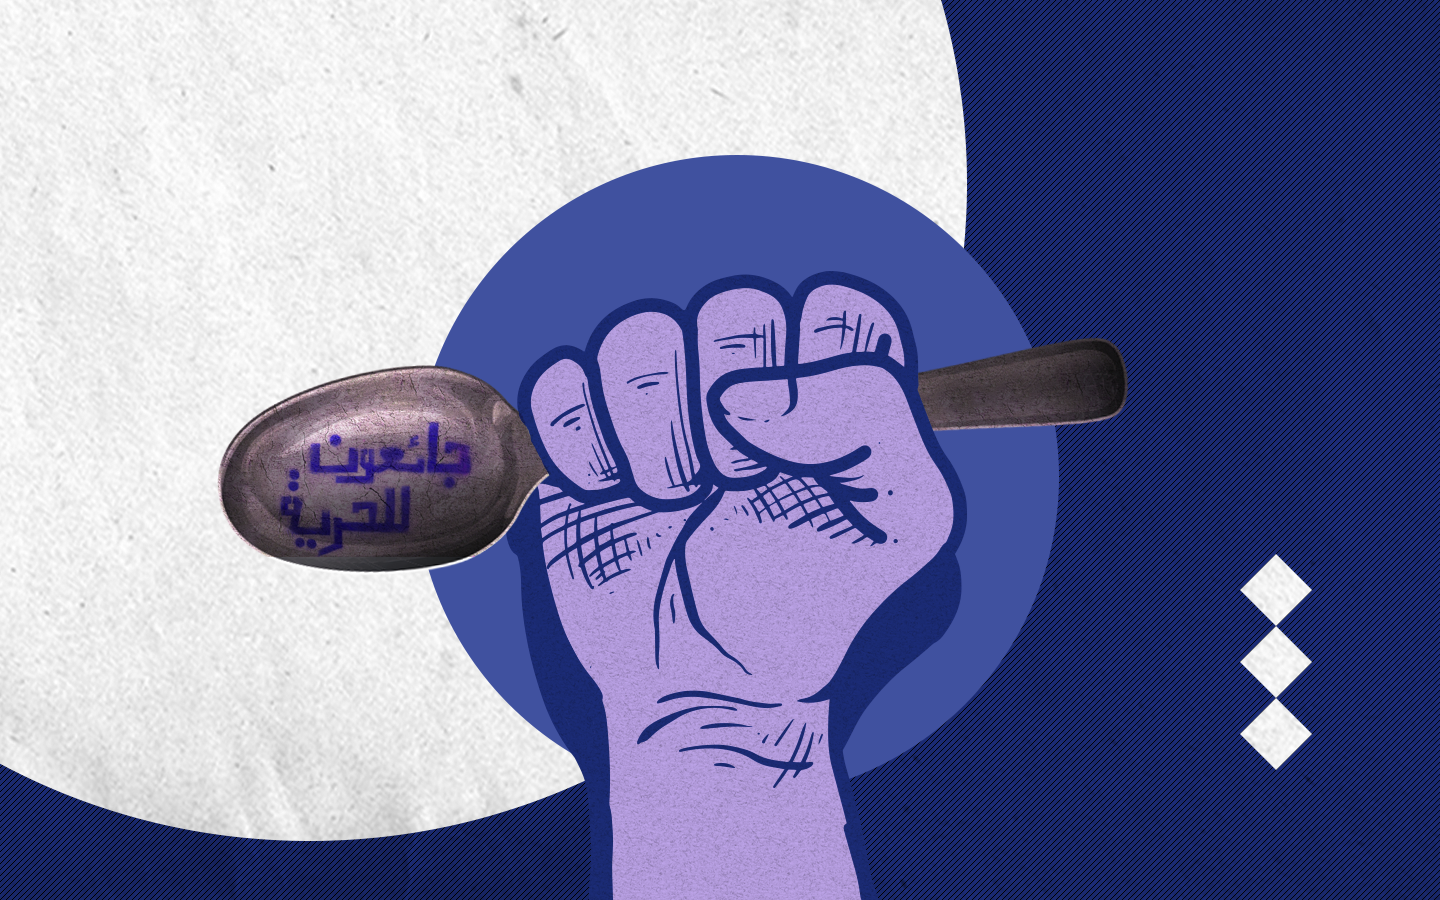 الأسيران كايد الفسفوس وأحمد المسالمة مضربان عن الطعام منذ 7 أيام